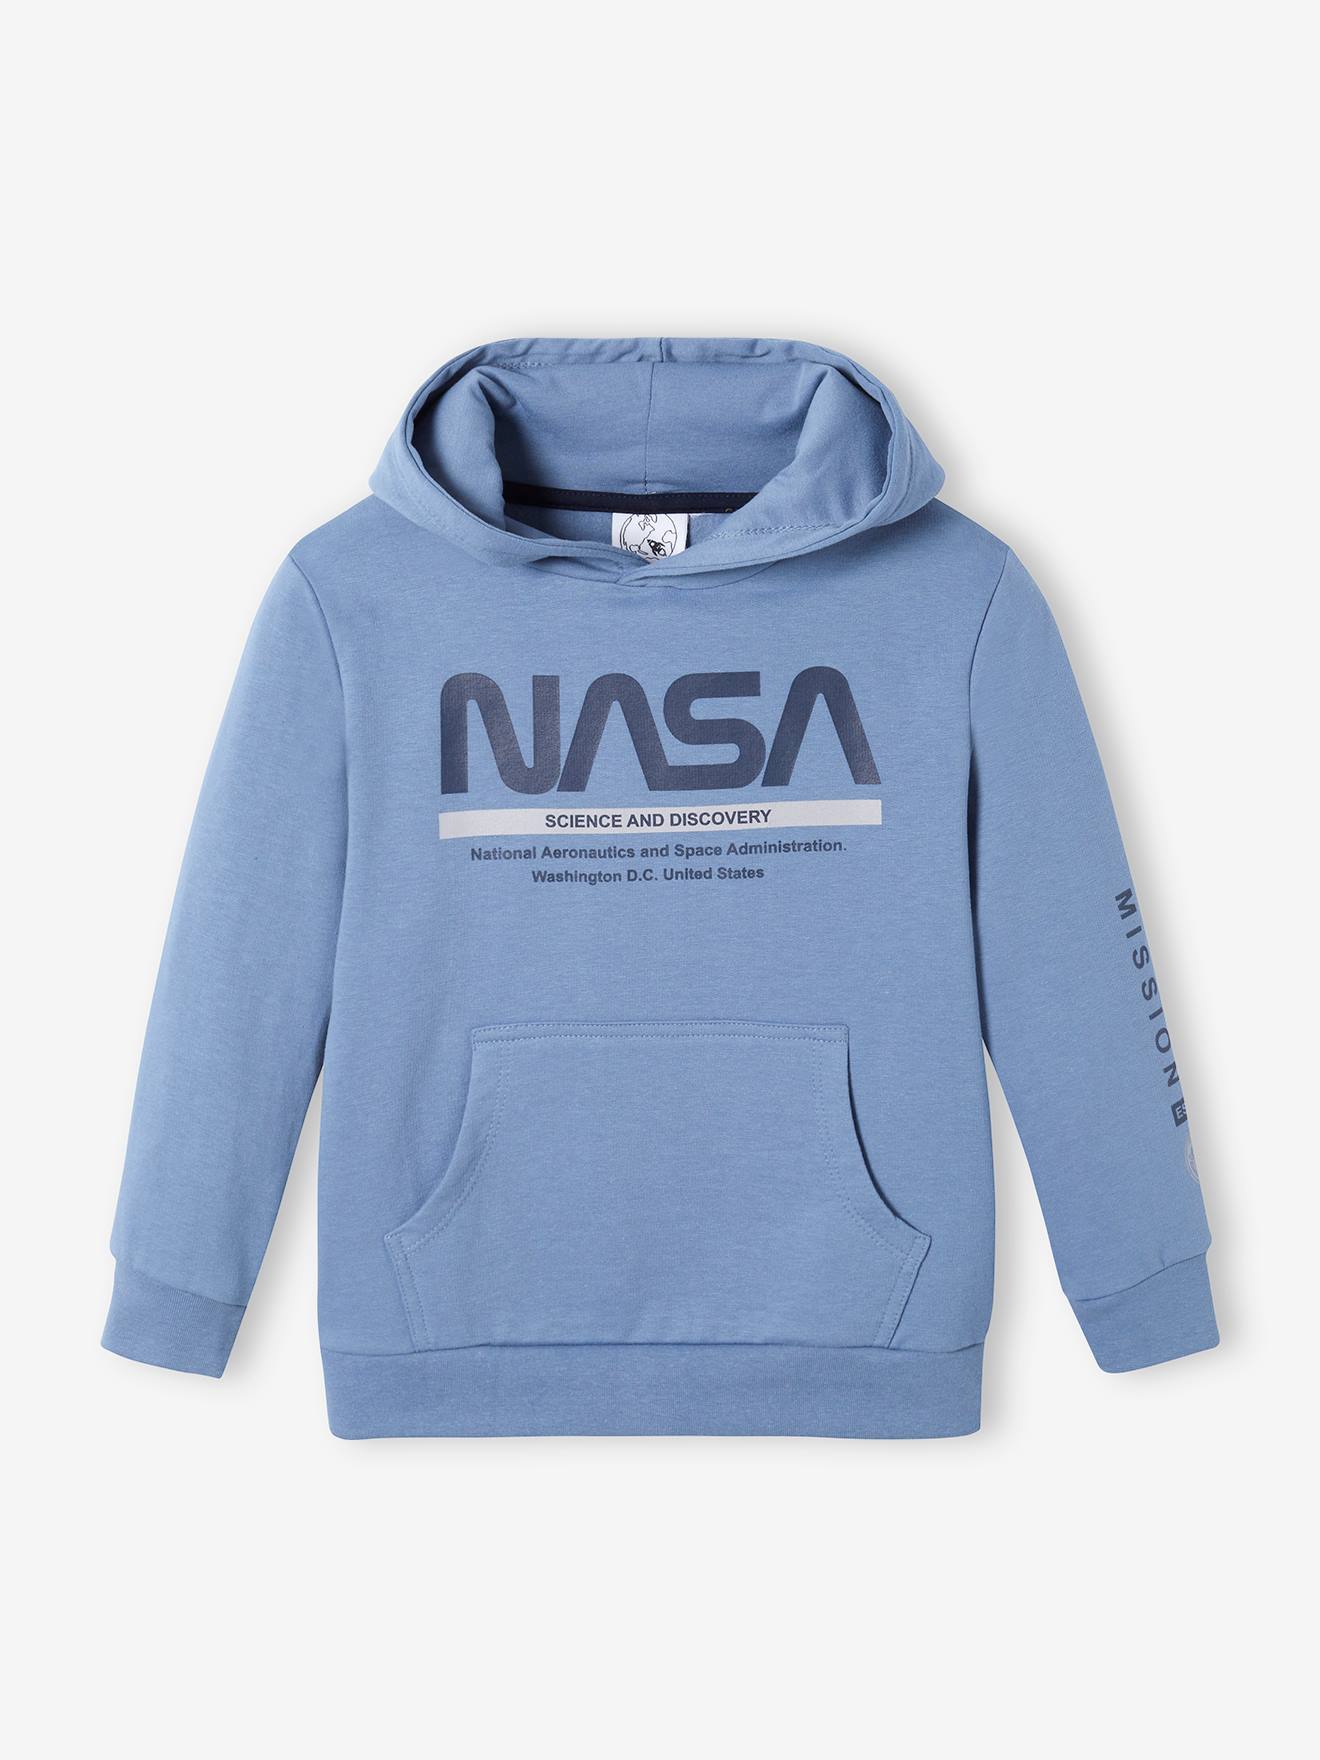 NASA Jungen Kapuzensweatshirt NASA